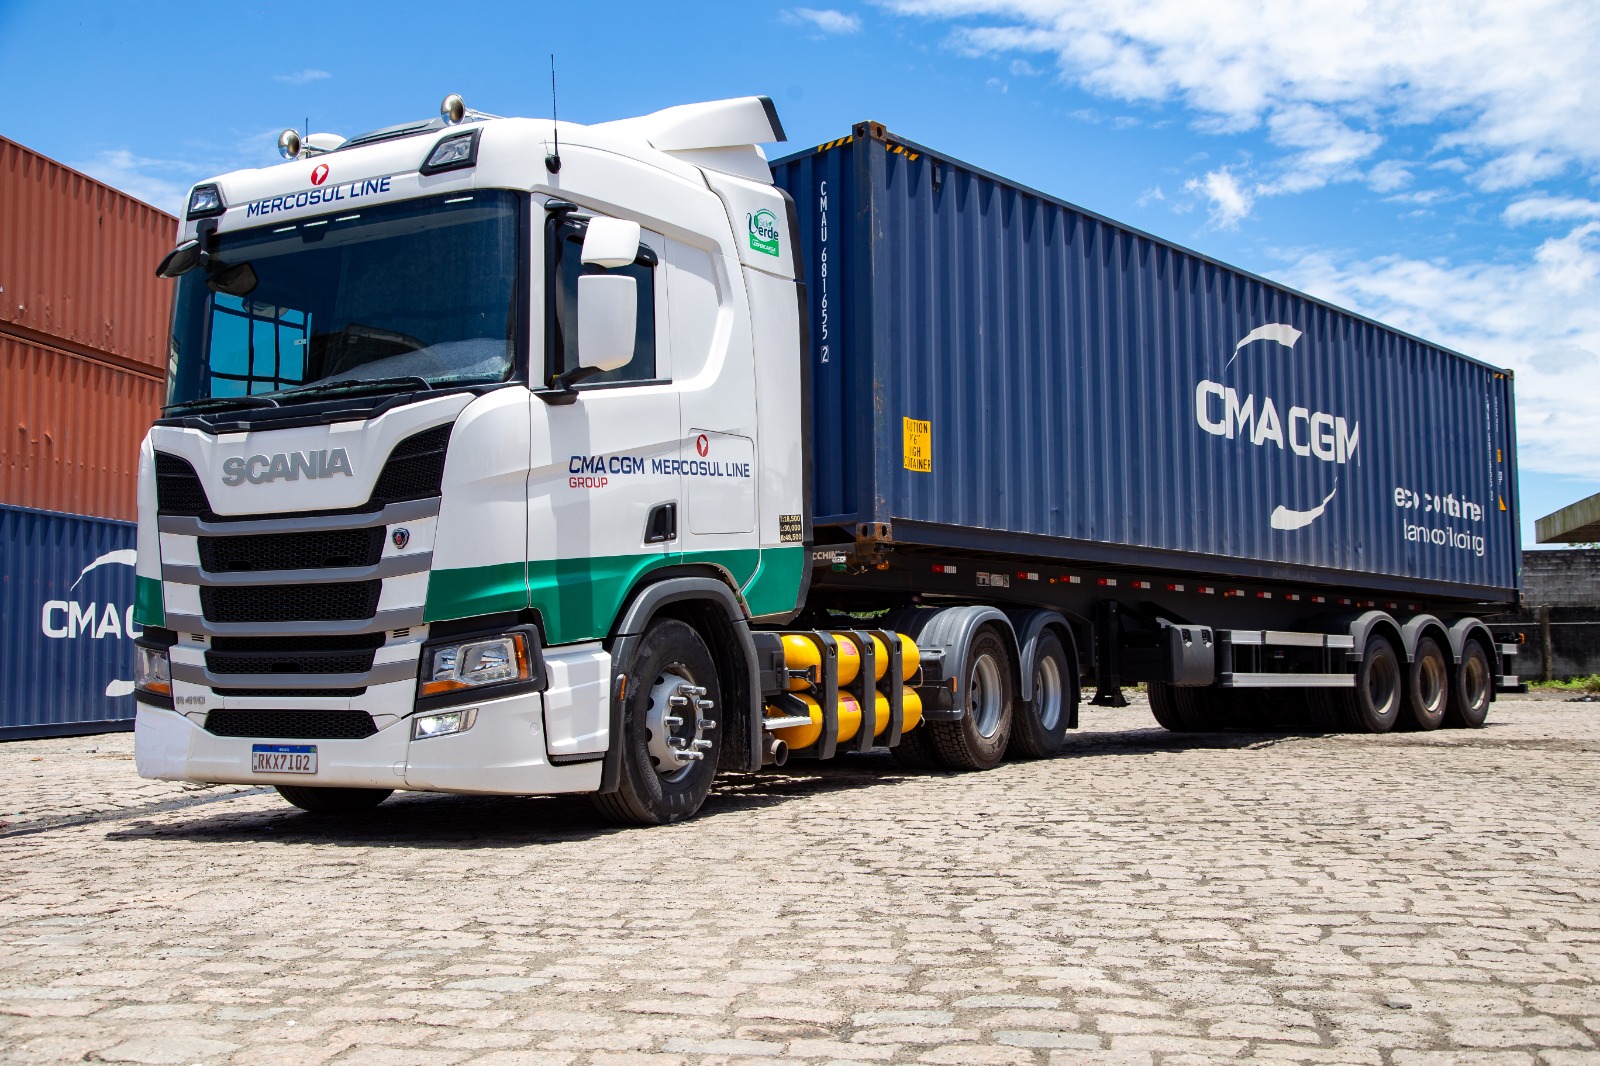 Transportadora brasileira no Mercosul vai investir em caminhões movidos a GNV